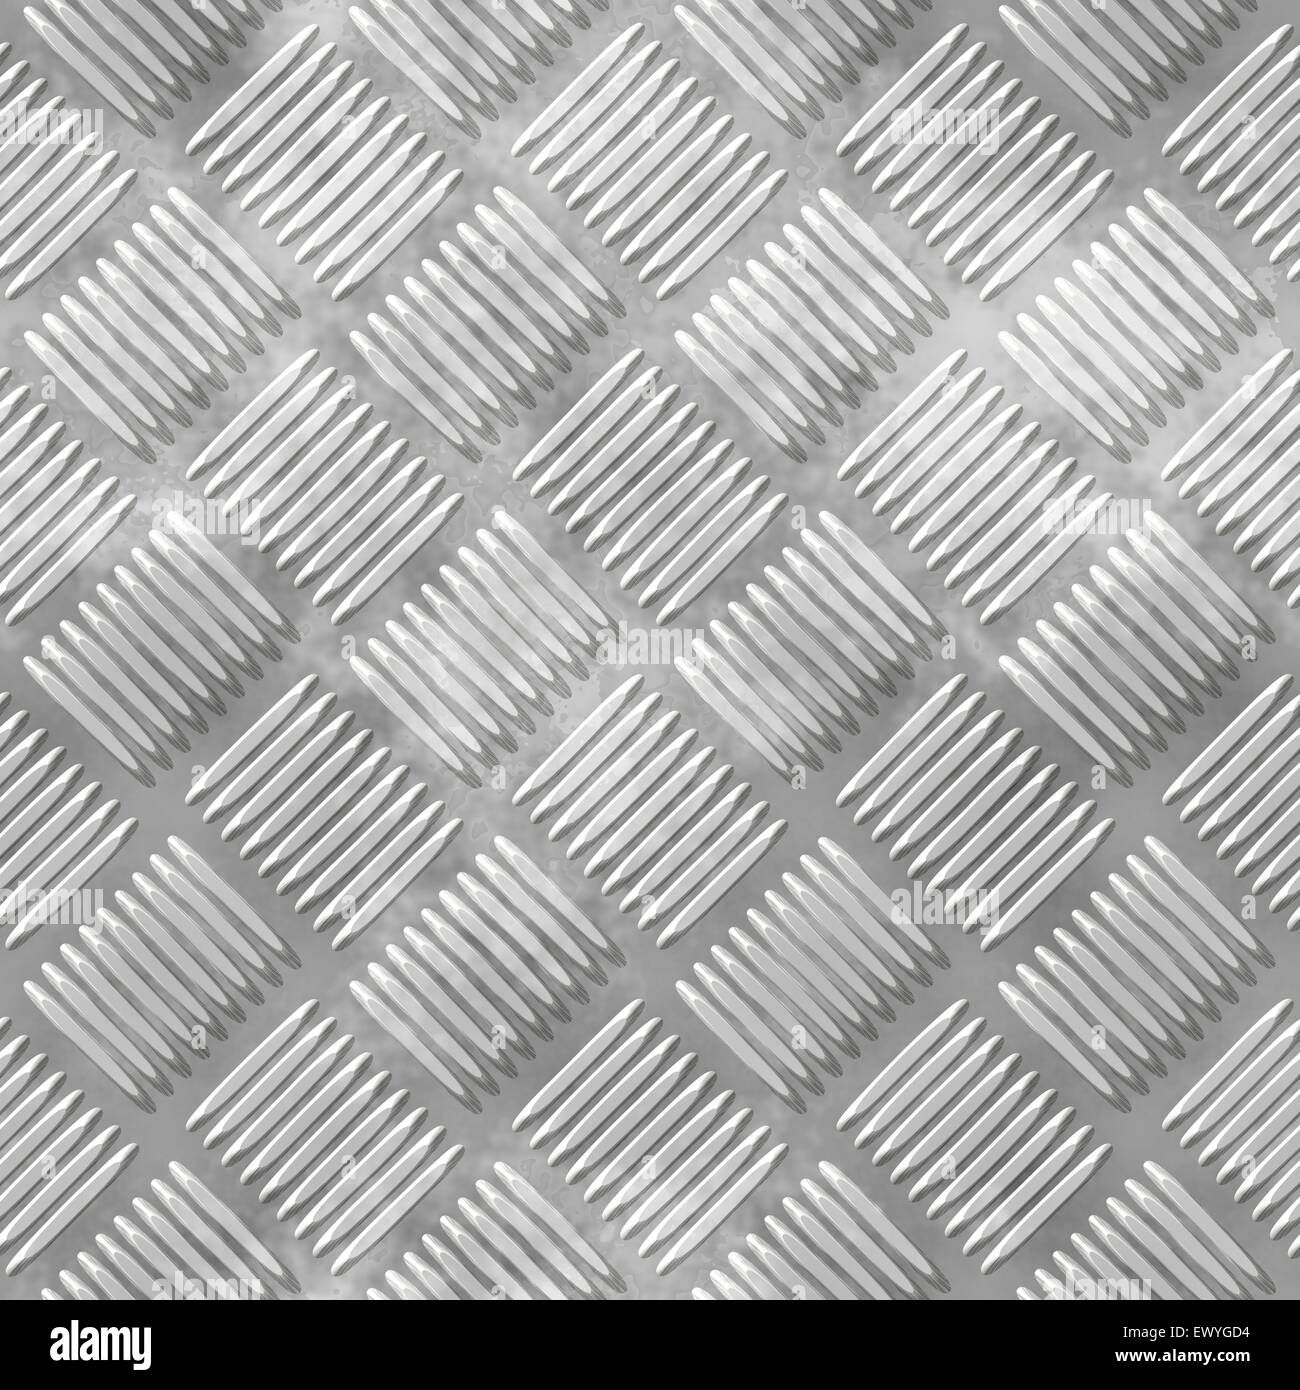 Illustration de la plaque métallique de diamants avec côtes. Banque D'Images